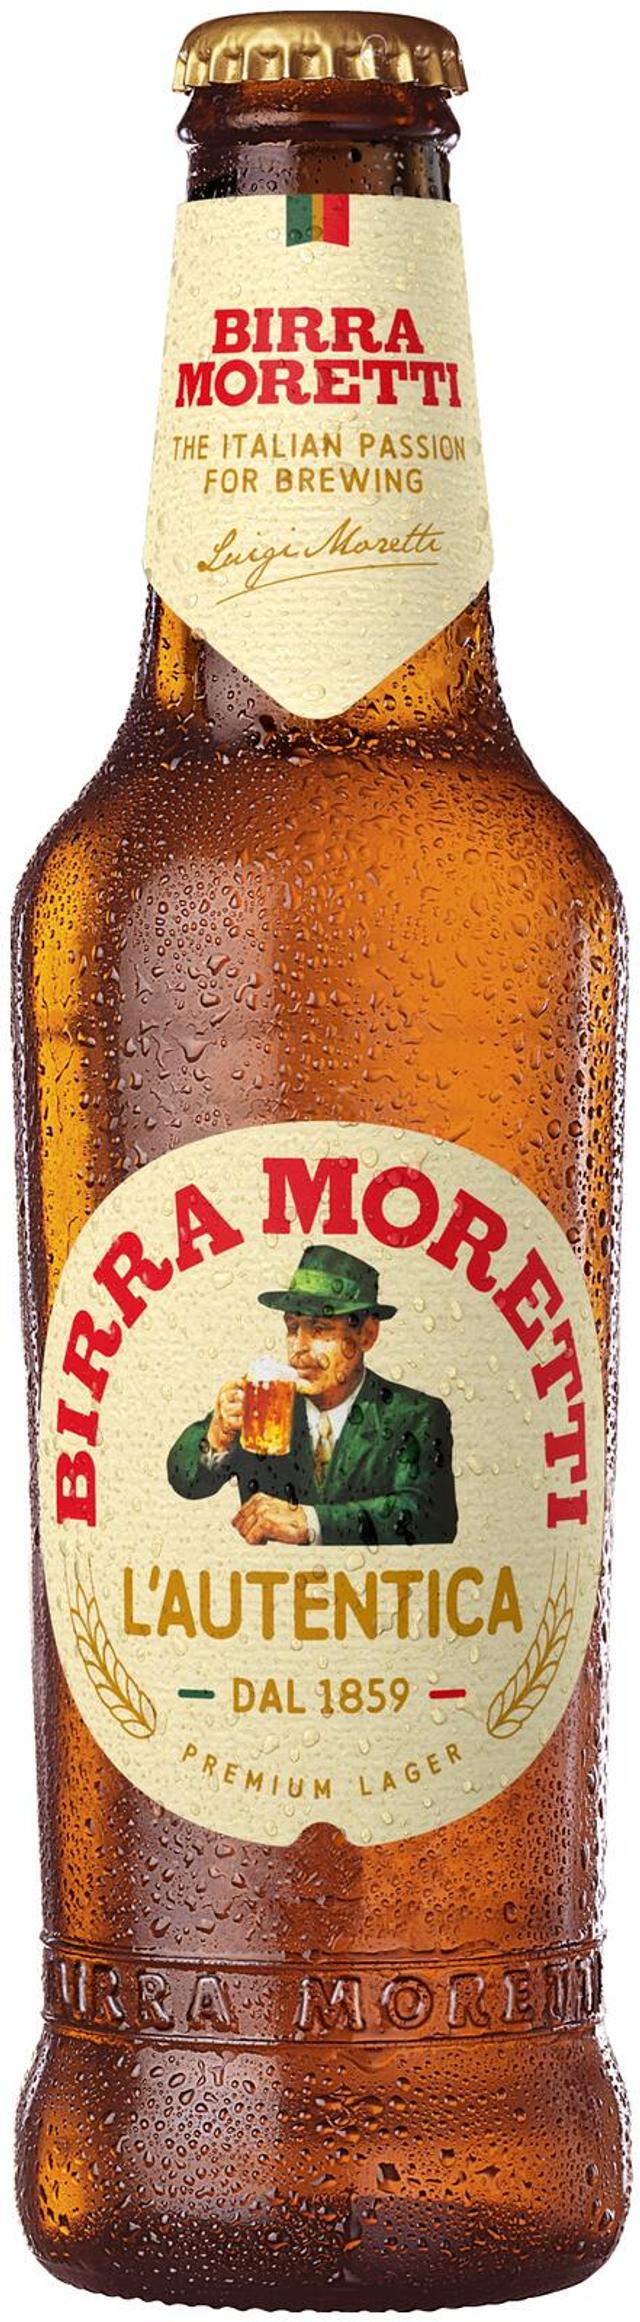 Birra Moretti olut 4,6% 0,33 l